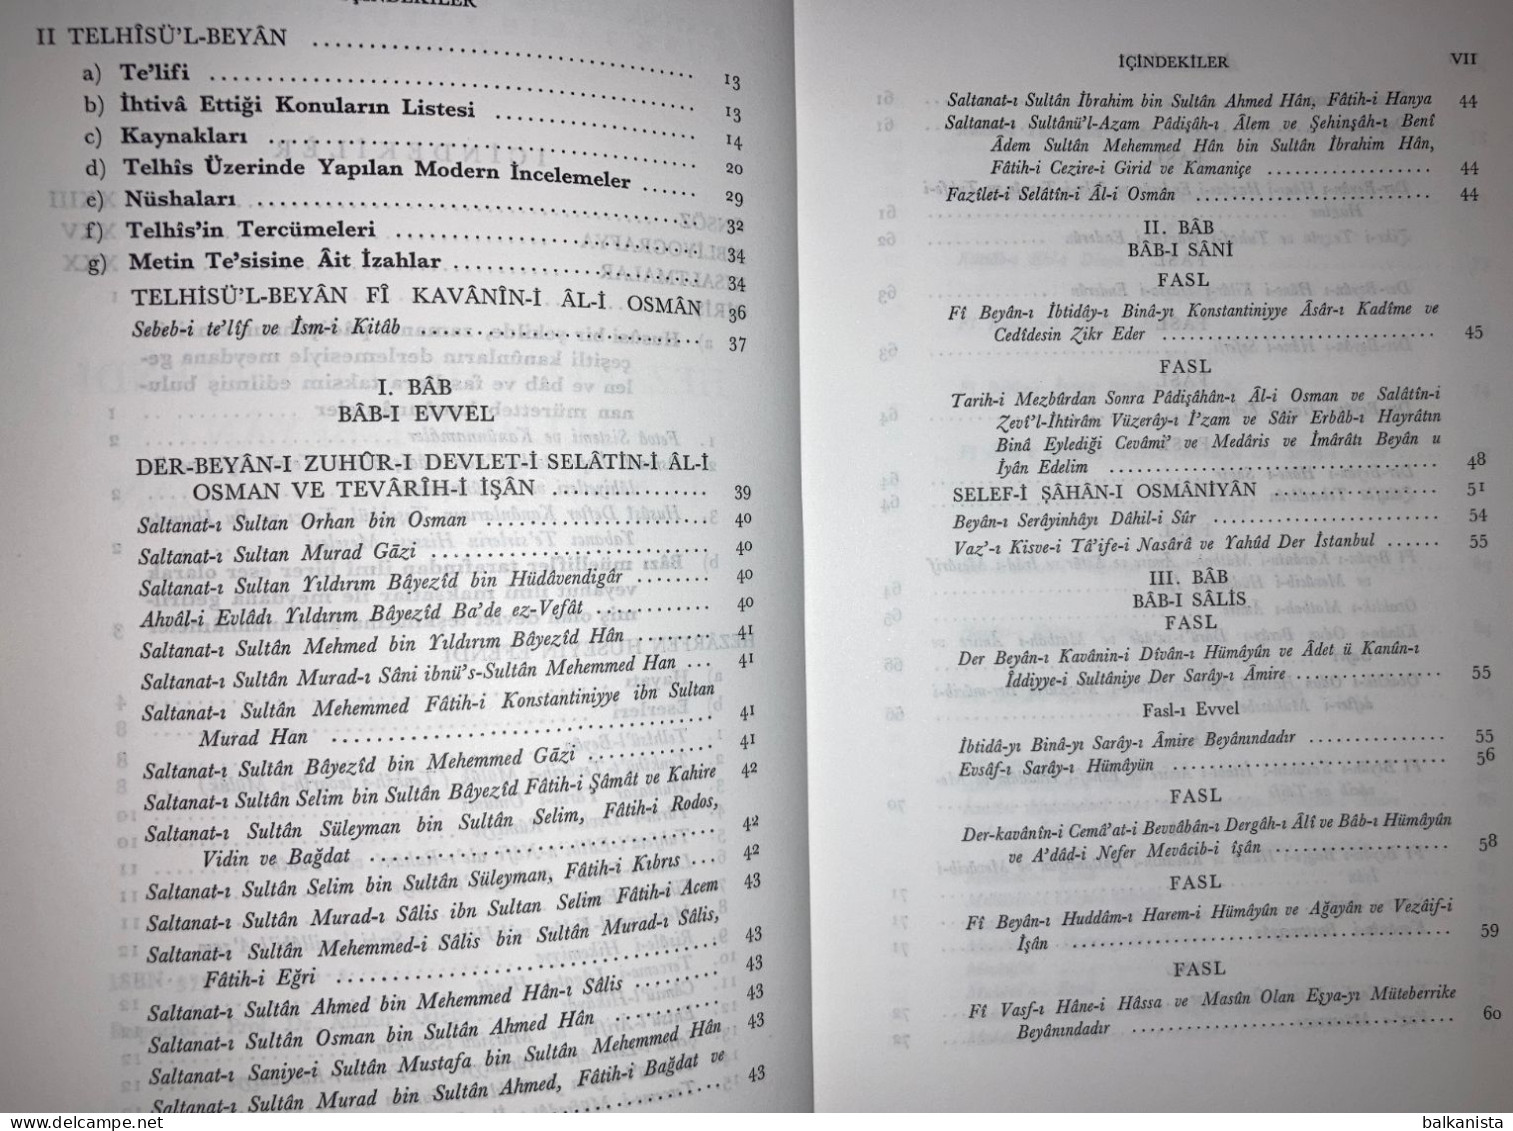 Telhisu'l Beyan Fi Kavanin-i Al-i Osman Ottoman Turkish History - Middle East